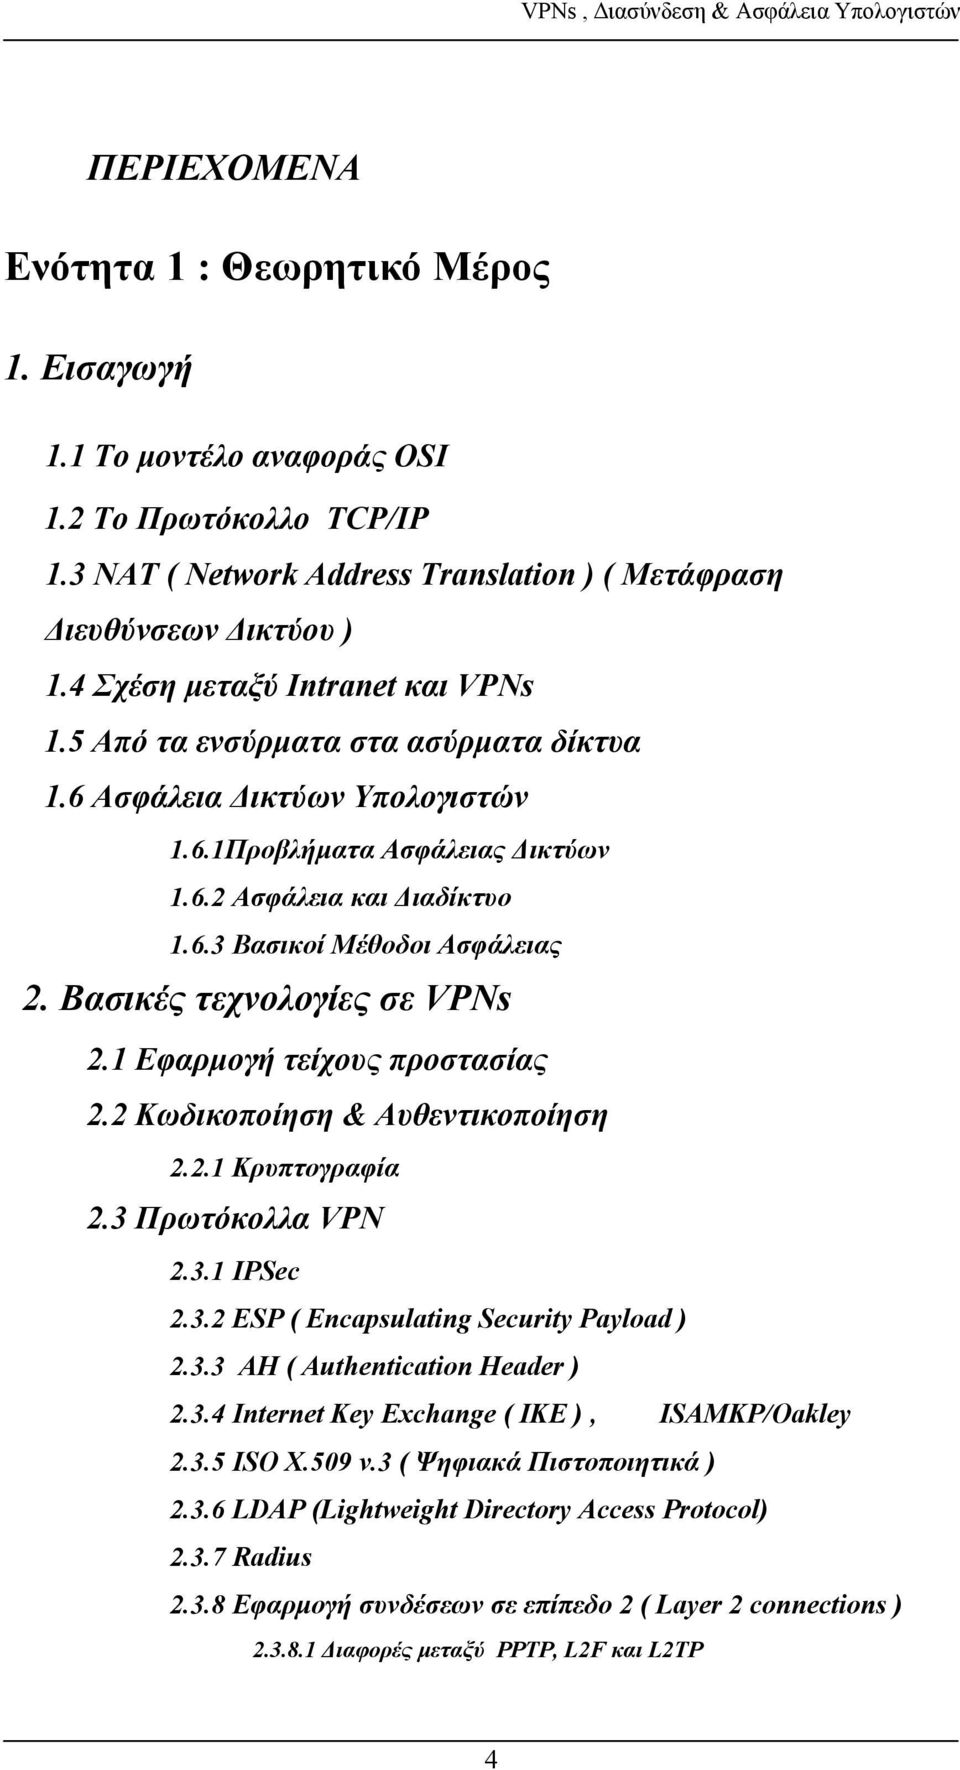 Βασικές τεχνολογίες σε VPNs 2.1 Εφαρμογή τείχους προστασίας 2.2 Κωδικοποίηση & Αυθεντικοποίηση 2.2.1 Κρυπτογραφία 2.3 Πρωτόκολλα VPN 2.3.1 IPSec 2.3.2 ESP ( Encapsulating Security Payload ) 2.3.3 AH ( Authentication Header ) 2.